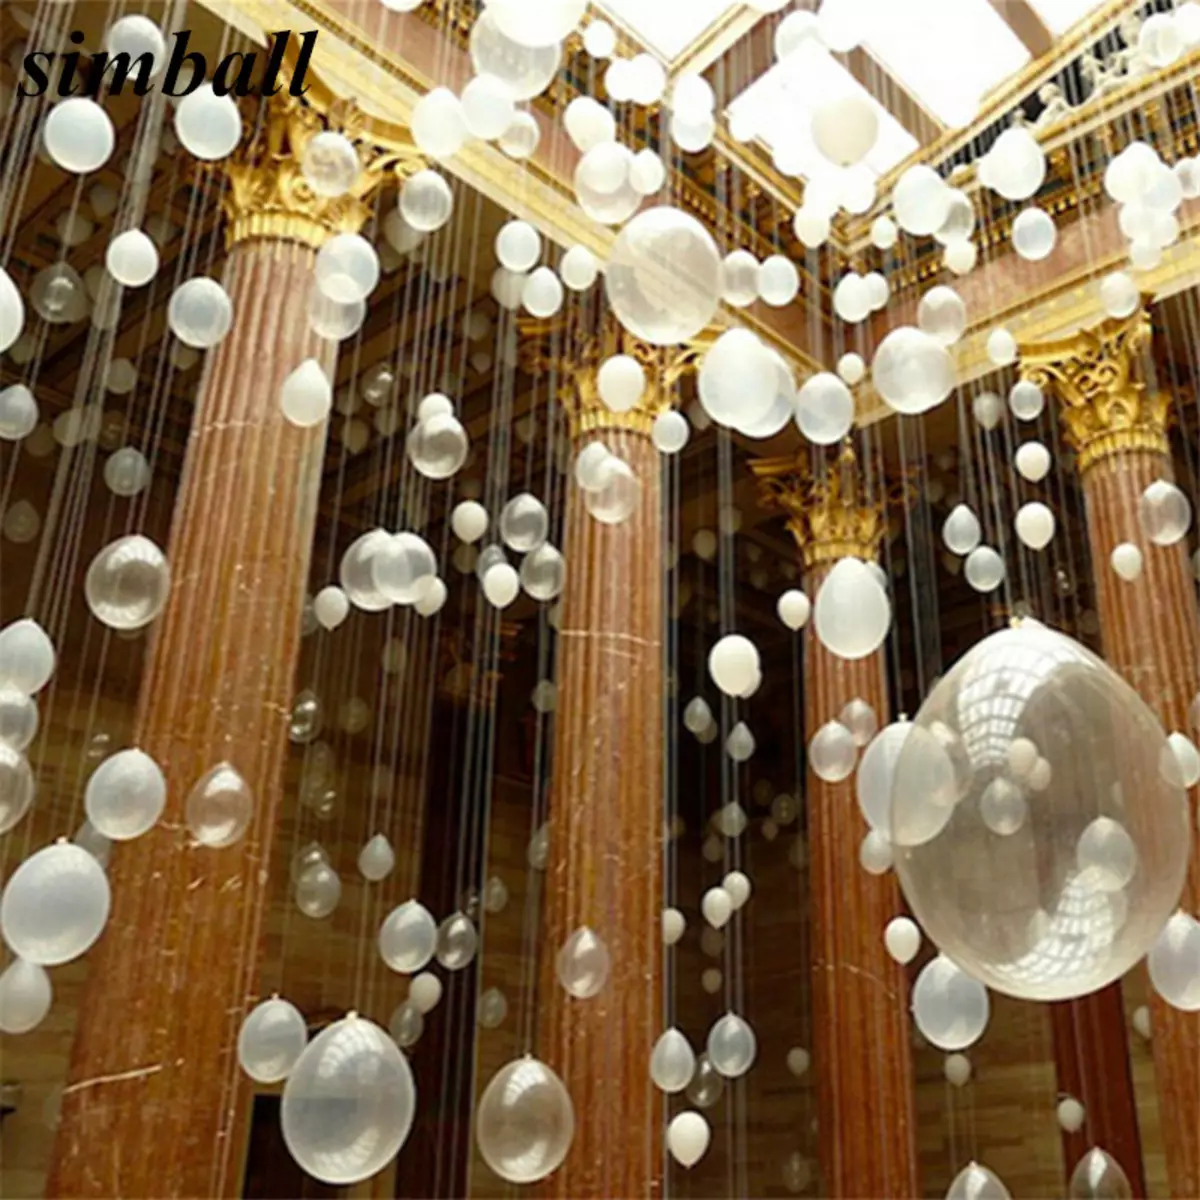 Dekoracija dvorane s loptima na godišnjicu: za ženu i muškarce na godišnjicu 50 i 60, 30 i 35, 70 godina iu drugim datumima balona 24641_52